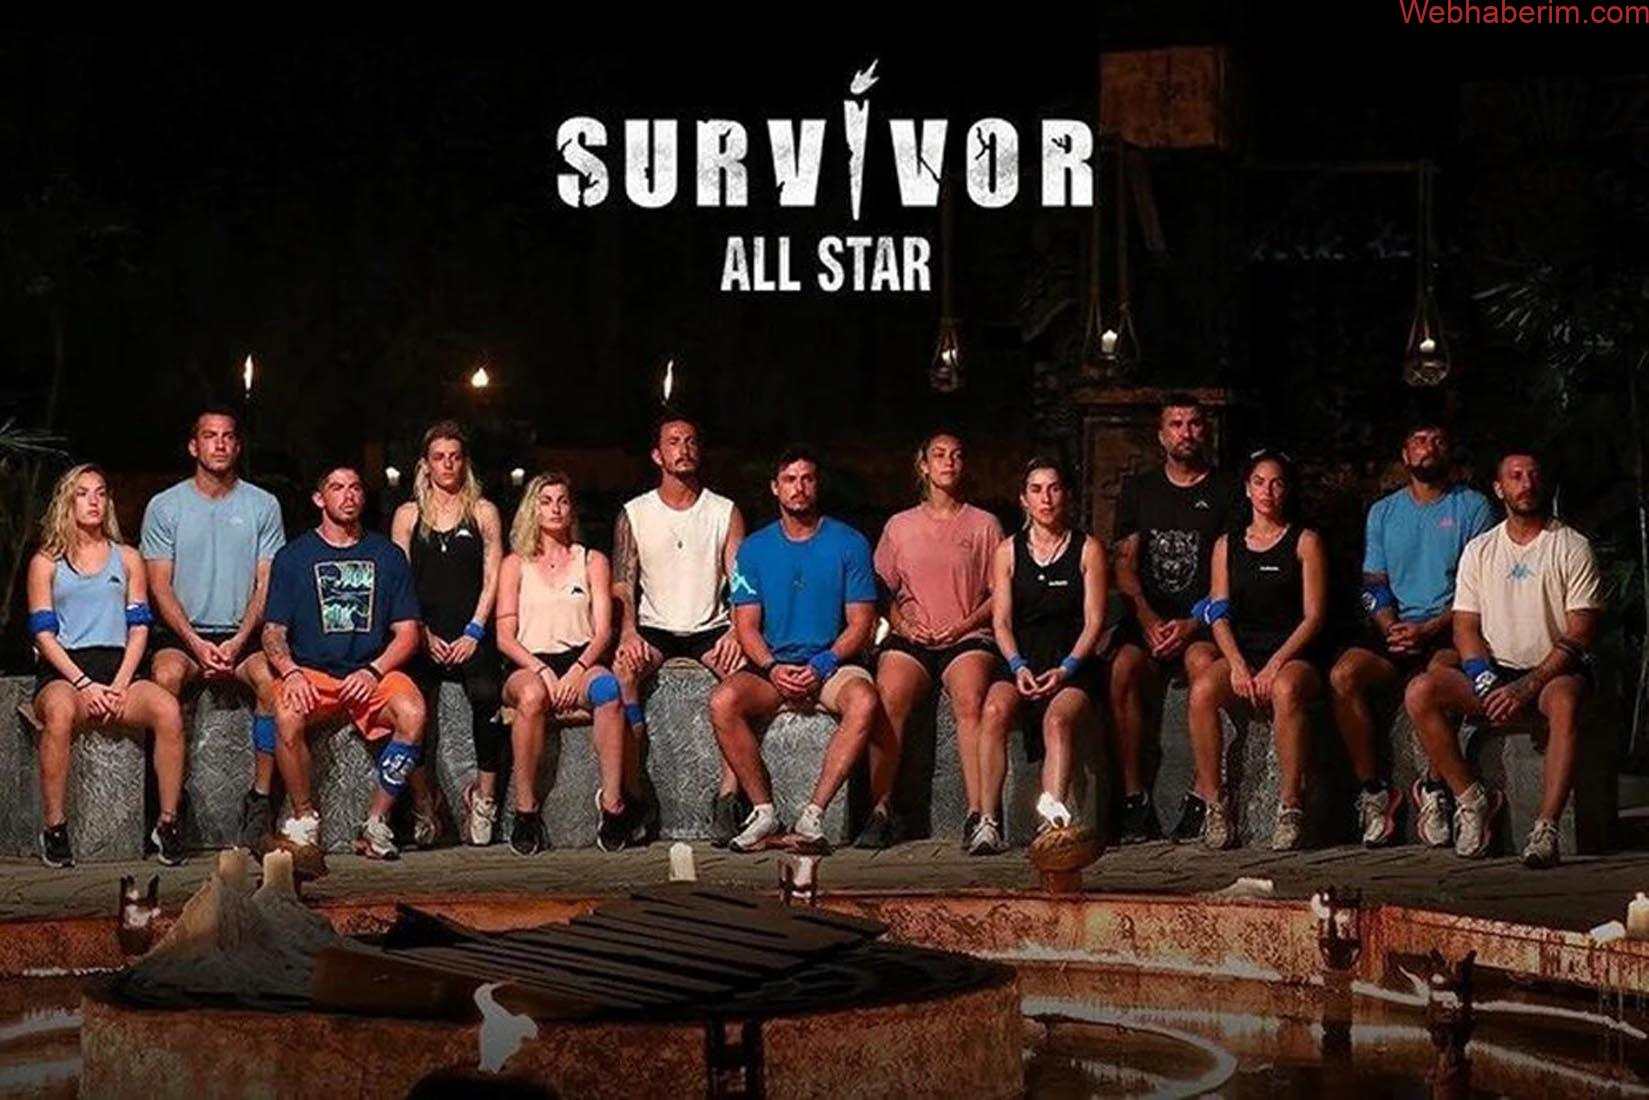 Survivor dokunulmazlık oyununu kim kazandı? 1 Nisan Survivor All Star'da dokunulmazlık oyununu kazanan hangi takım oldu?